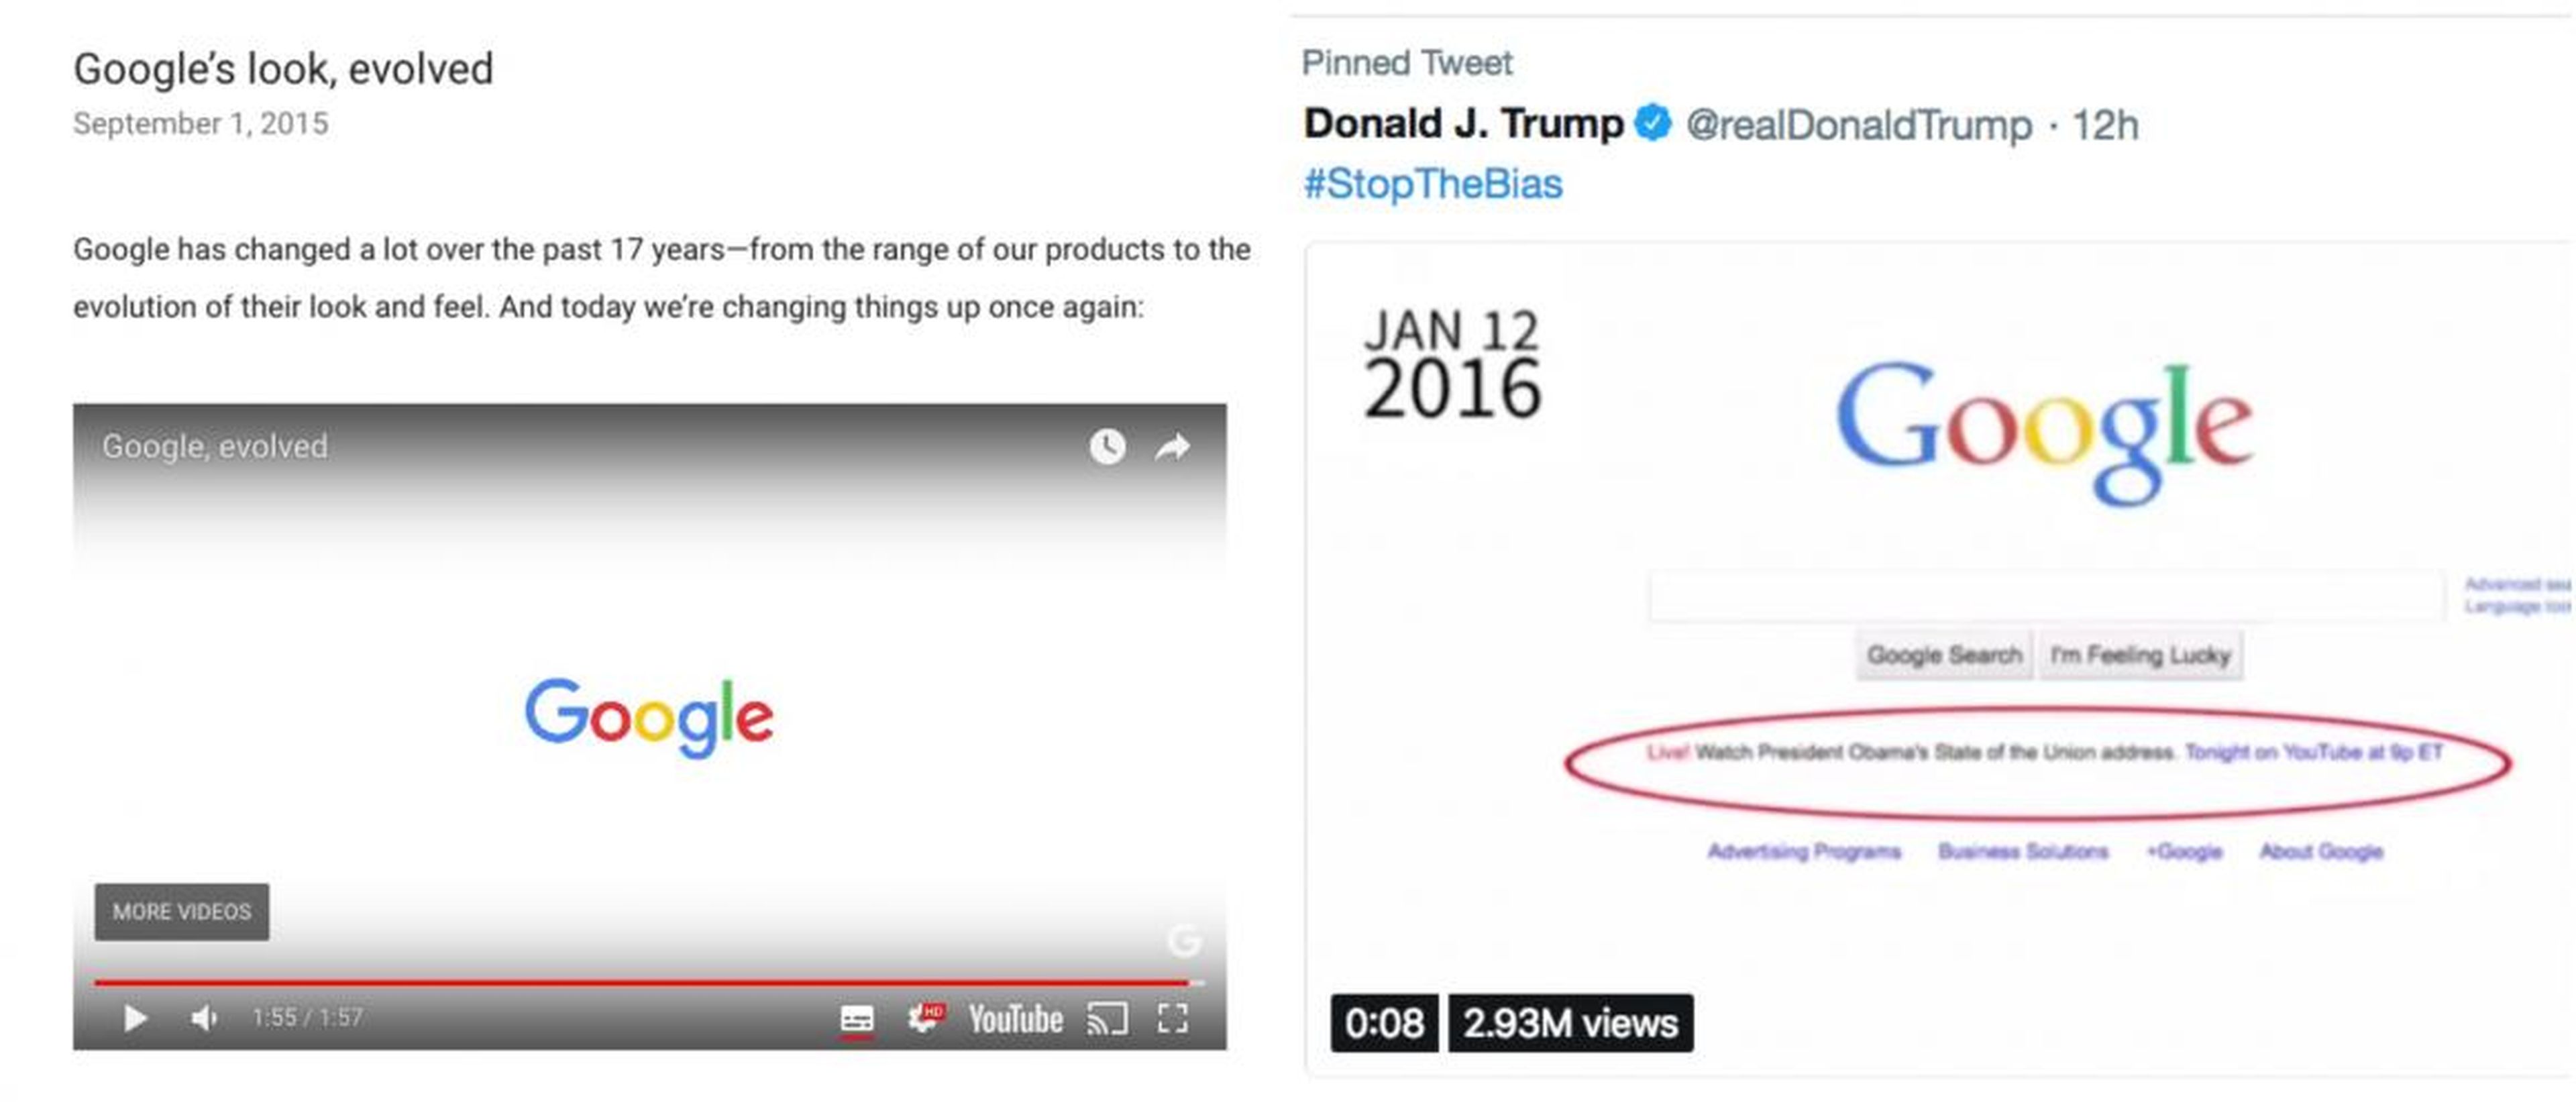 A la izquierda, el nuevo logo de Google, que utiliza desde septiembre de 2015. A la derecha, el logo que se ve en el vídeo de Trump, supuestamente de 2016.